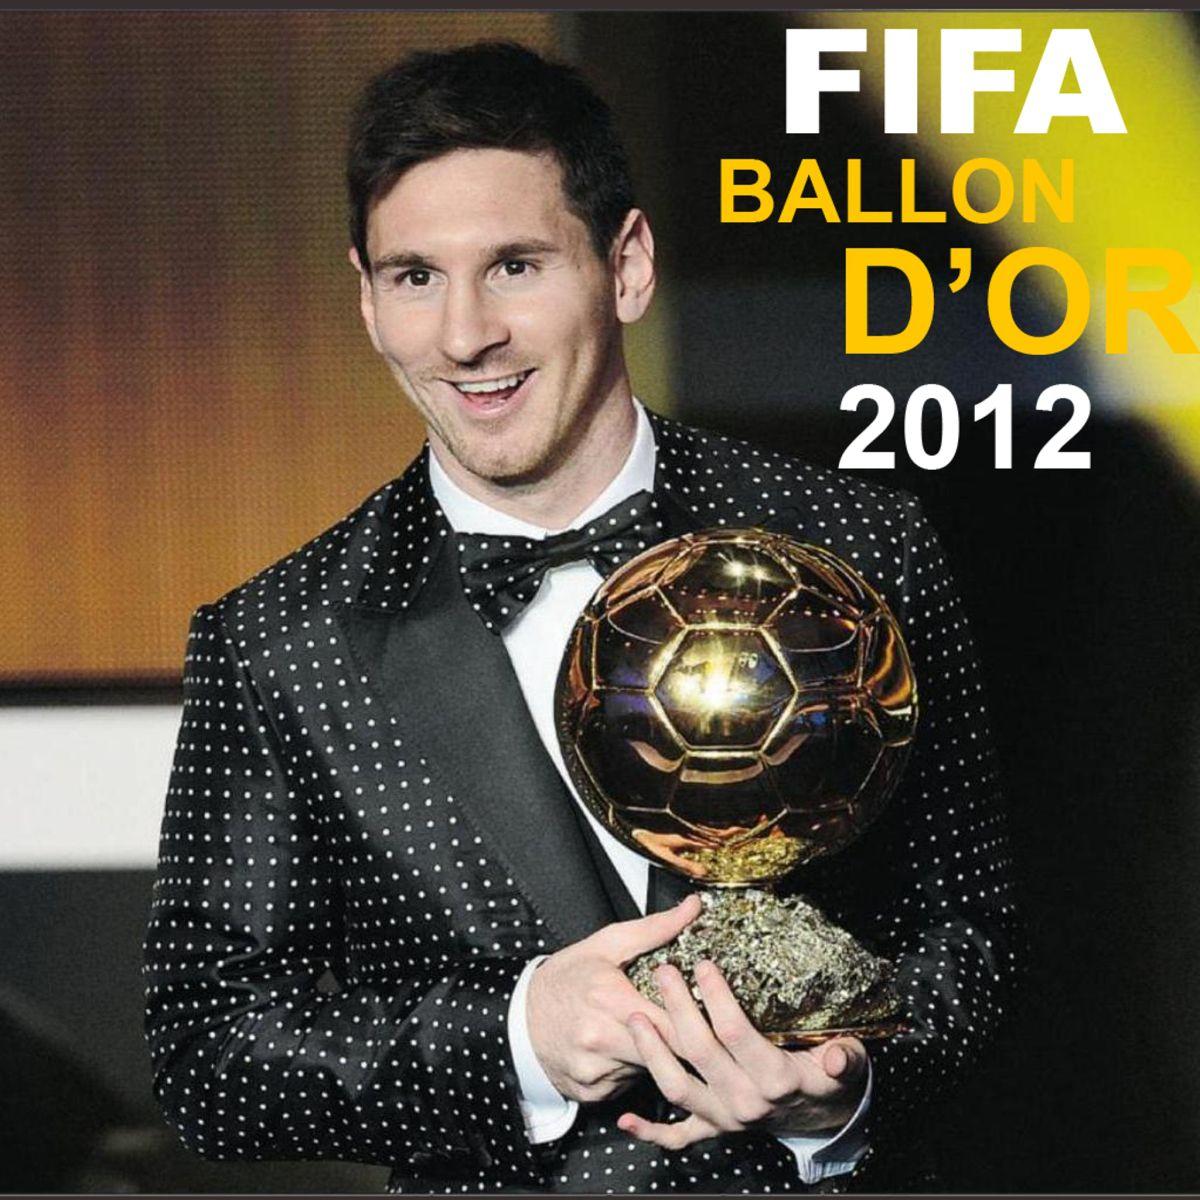 Lionel Messi Fifa Ballon Dor 2012 Gala Wallpaper Sport